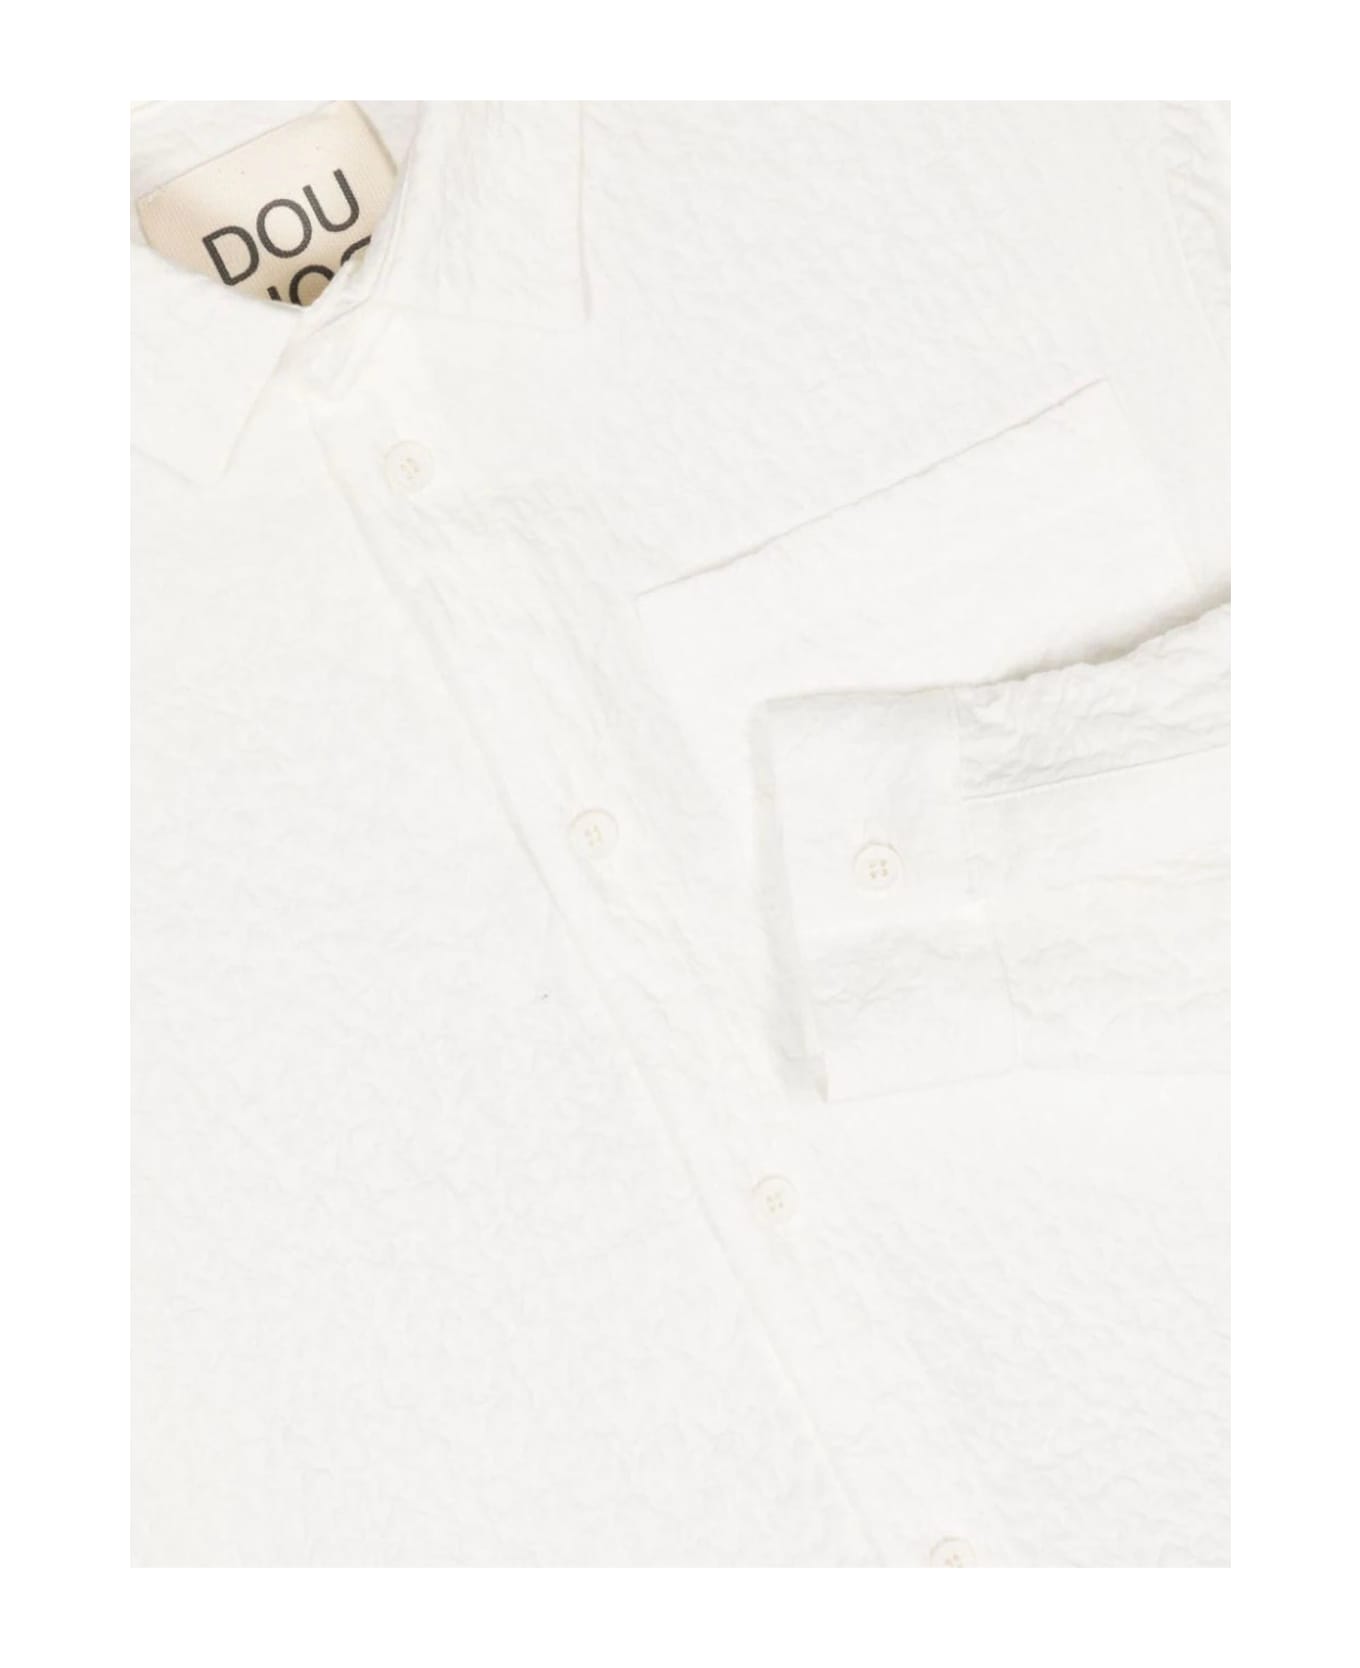 Douuod Dou Dou Shirts White - White